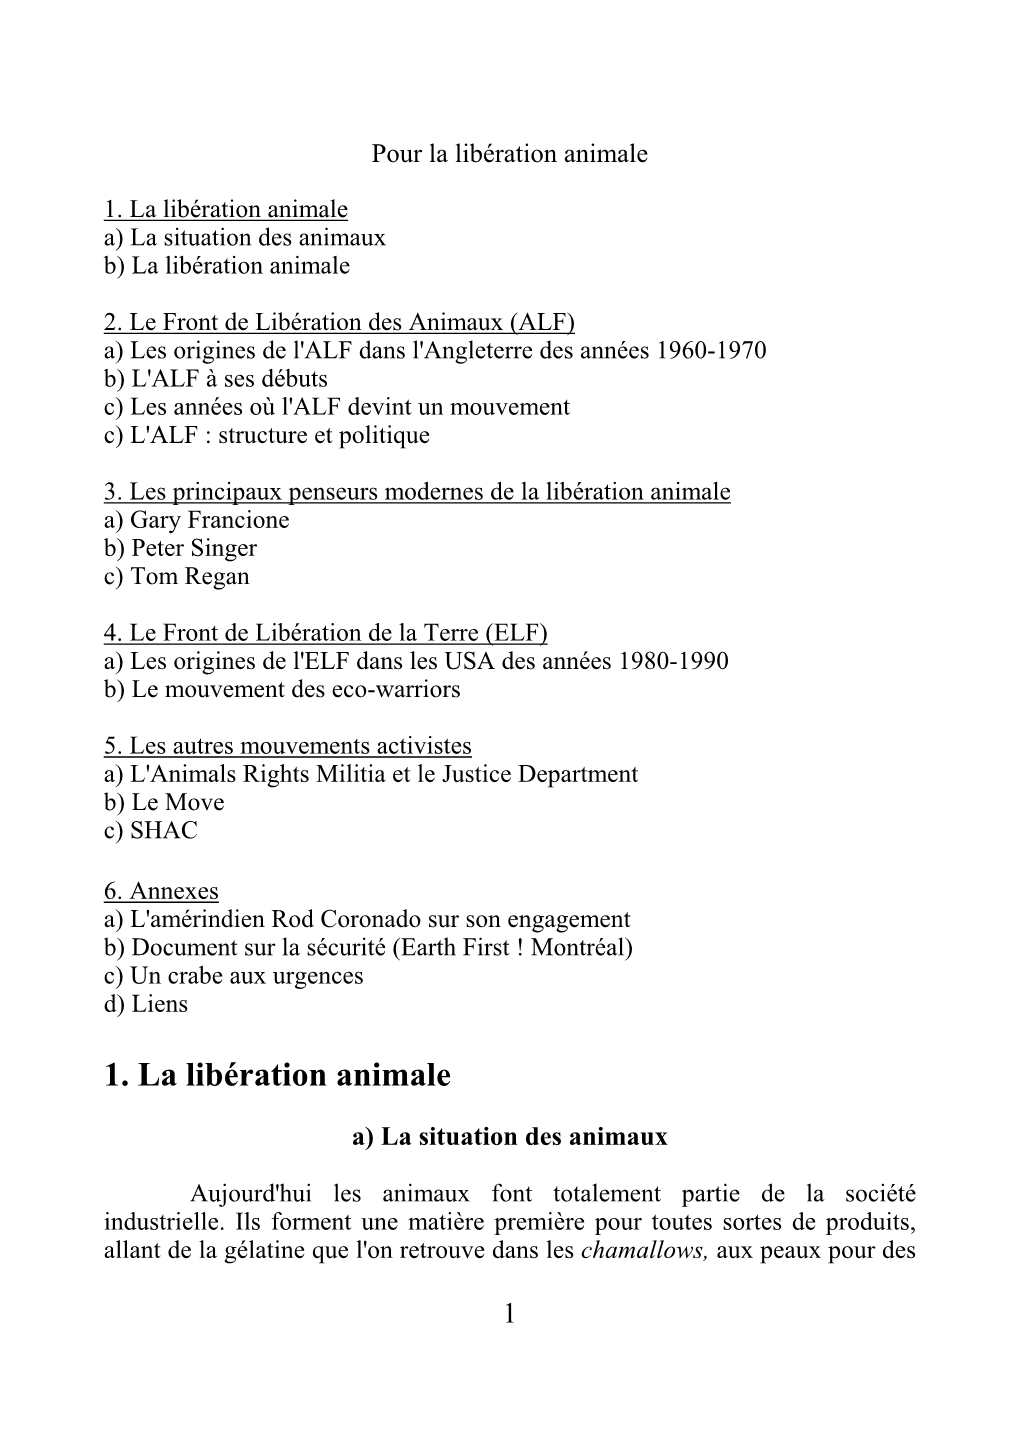 1. La Libération Animale A) La Situation Des Animaux B) La Libération Animale